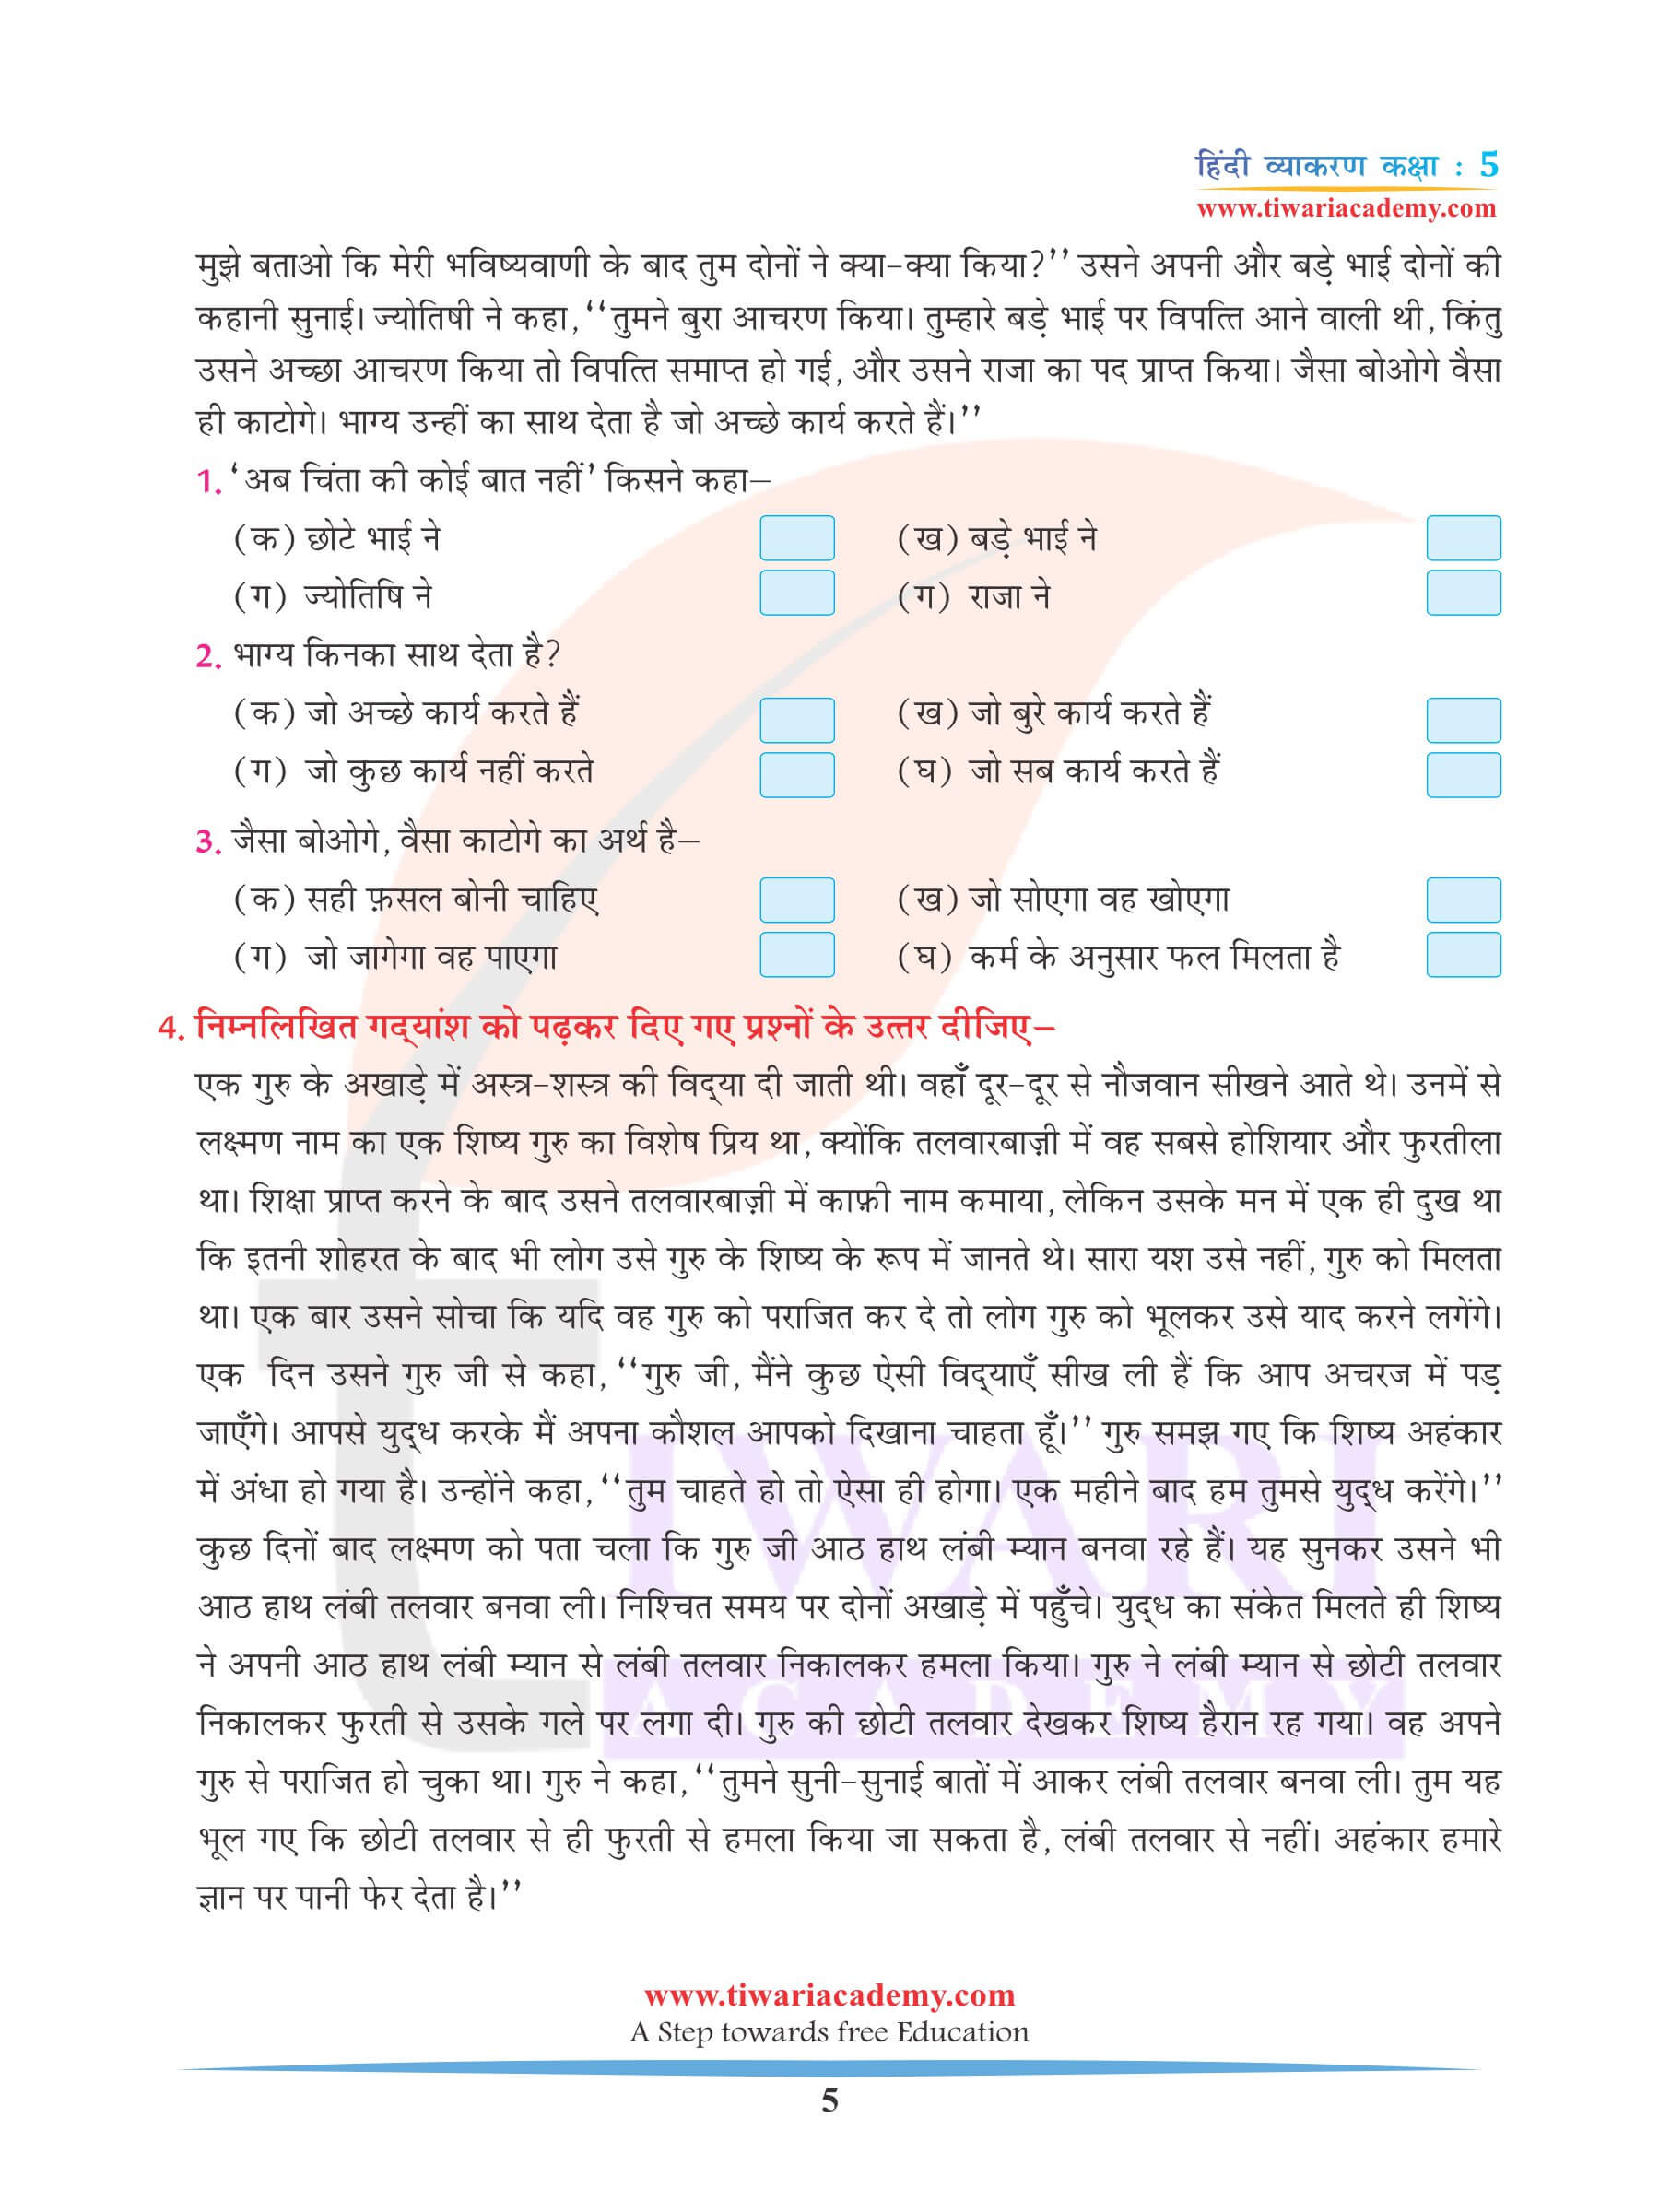 कक्षा 5 हिंदी व्याकरण के लिए अपठित गद्यांश